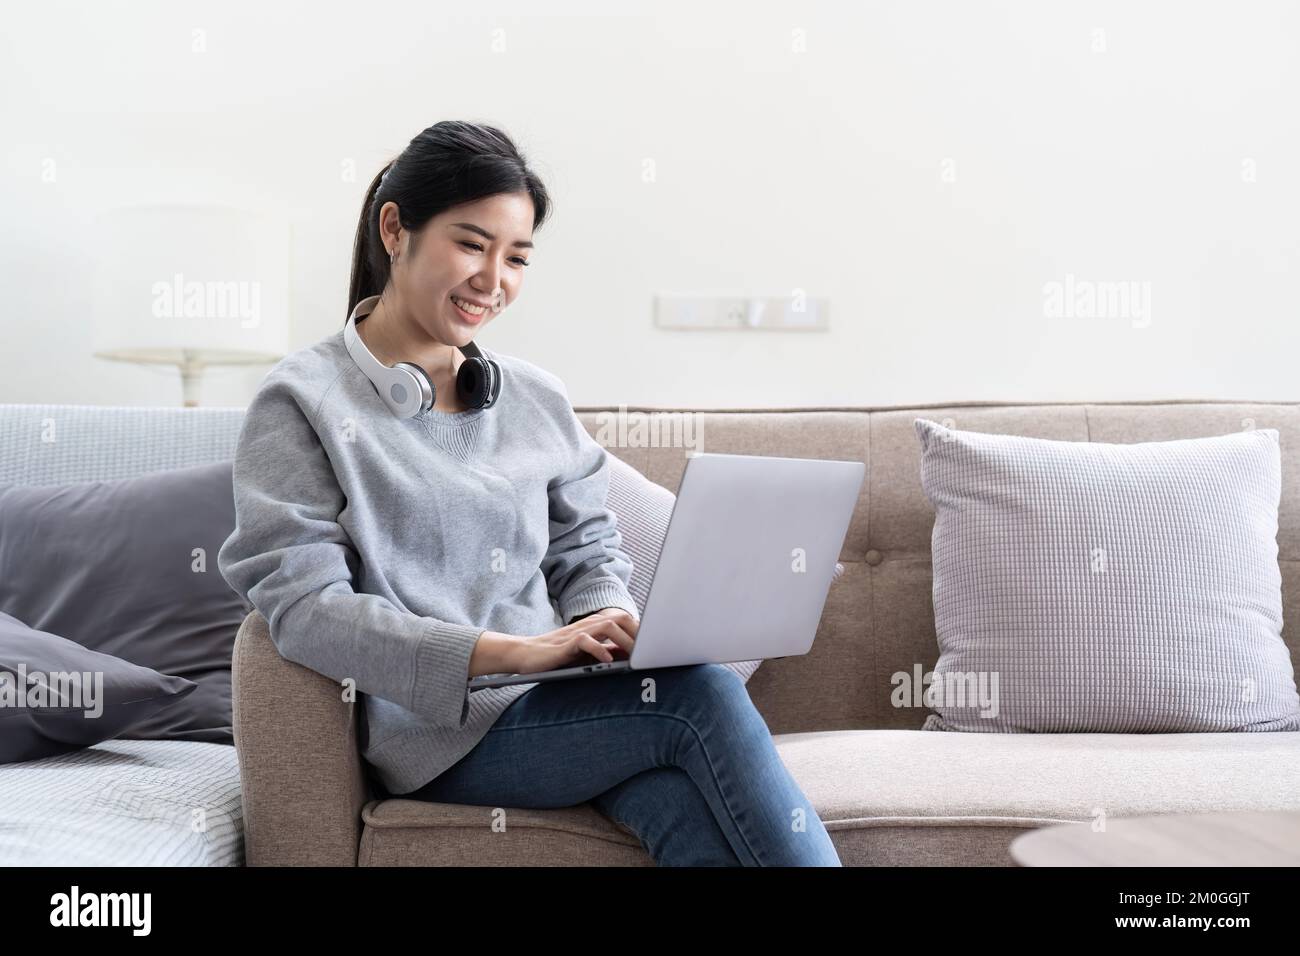 Foto einer jungen asiatischen Frau, die fröhlich lächelt und auf der Couch sitzt, um im Haus nach einem Laptop zu suchen Stockfoto